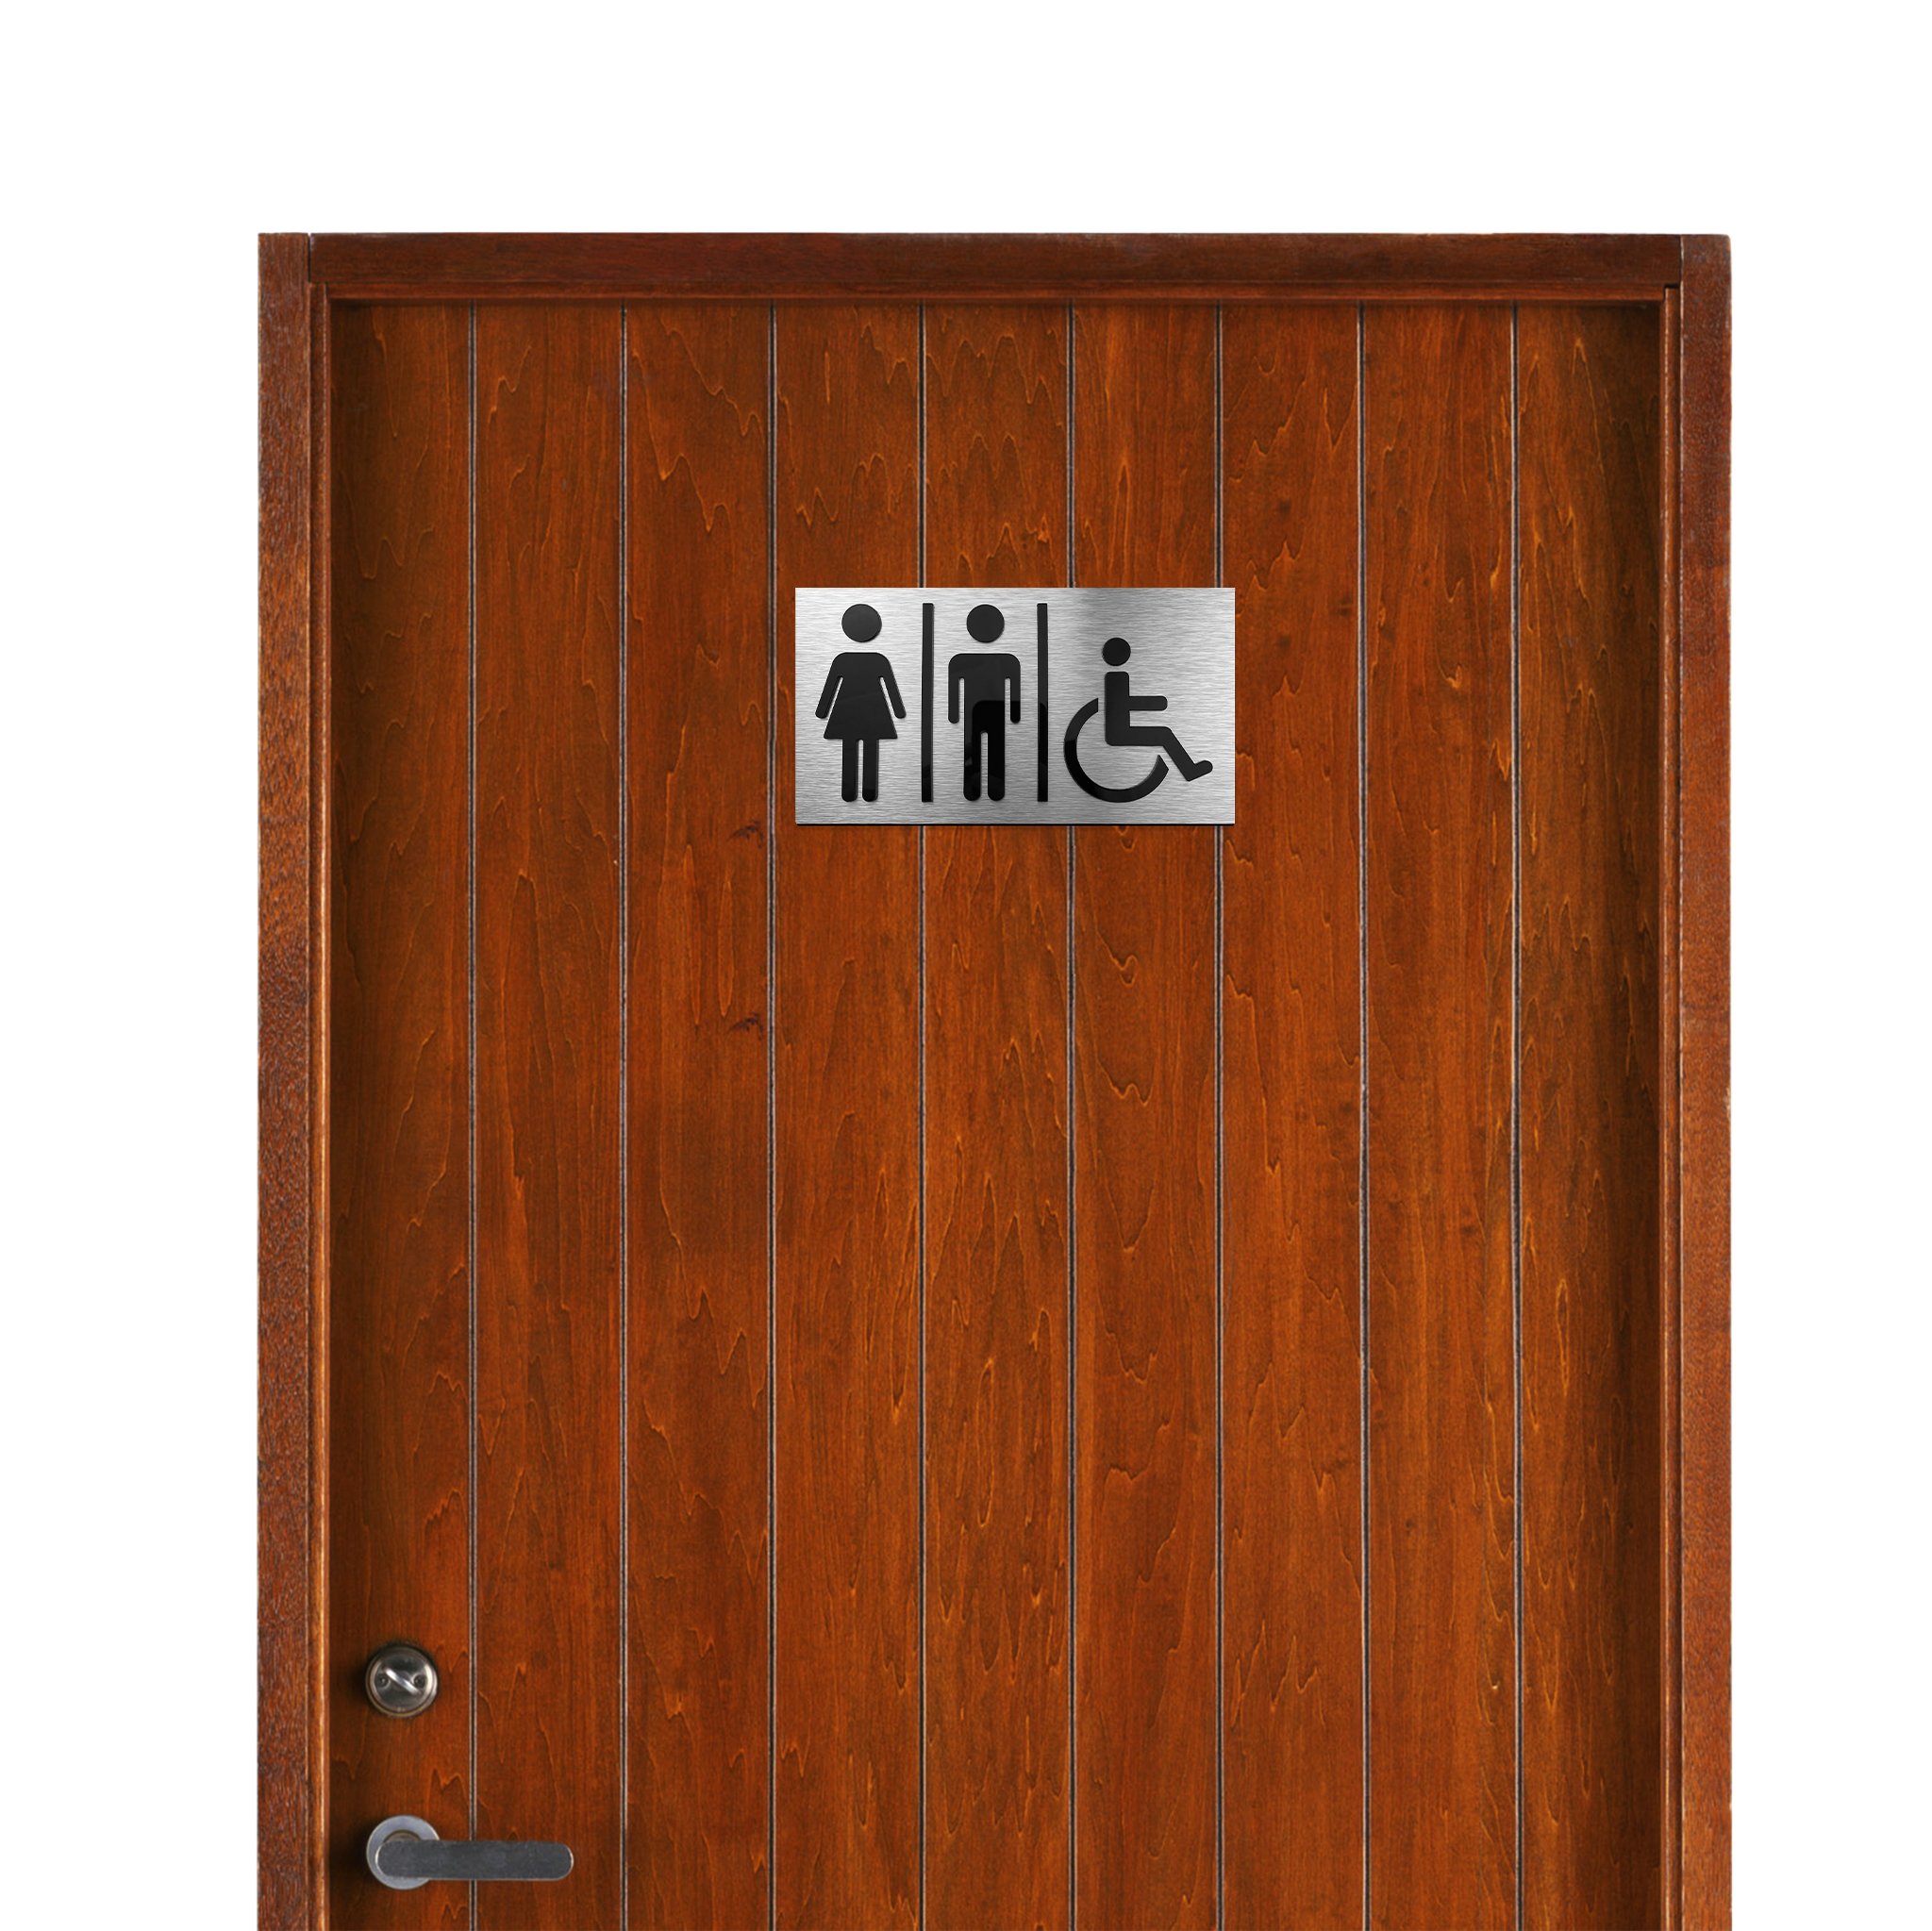 ALL GENDER RESTROOM SIGN - ALUMADESIGNCO Door Signs - Custom Door Signs For Business & Office